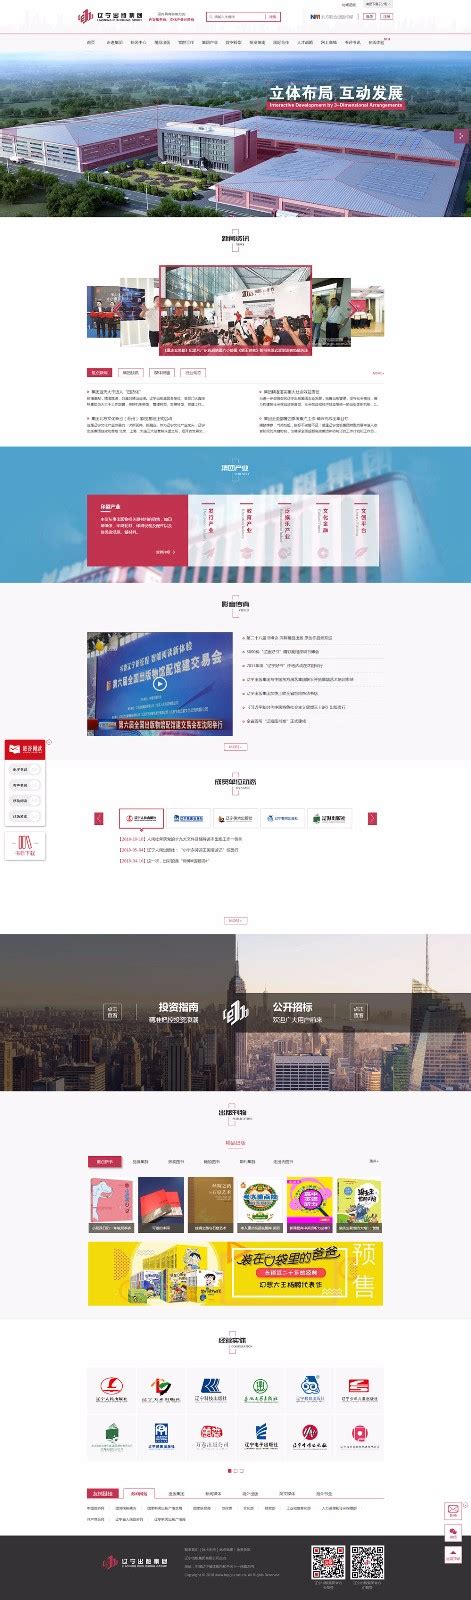 辽宁出版集团-沈阳示剑网络科技股份有限公司